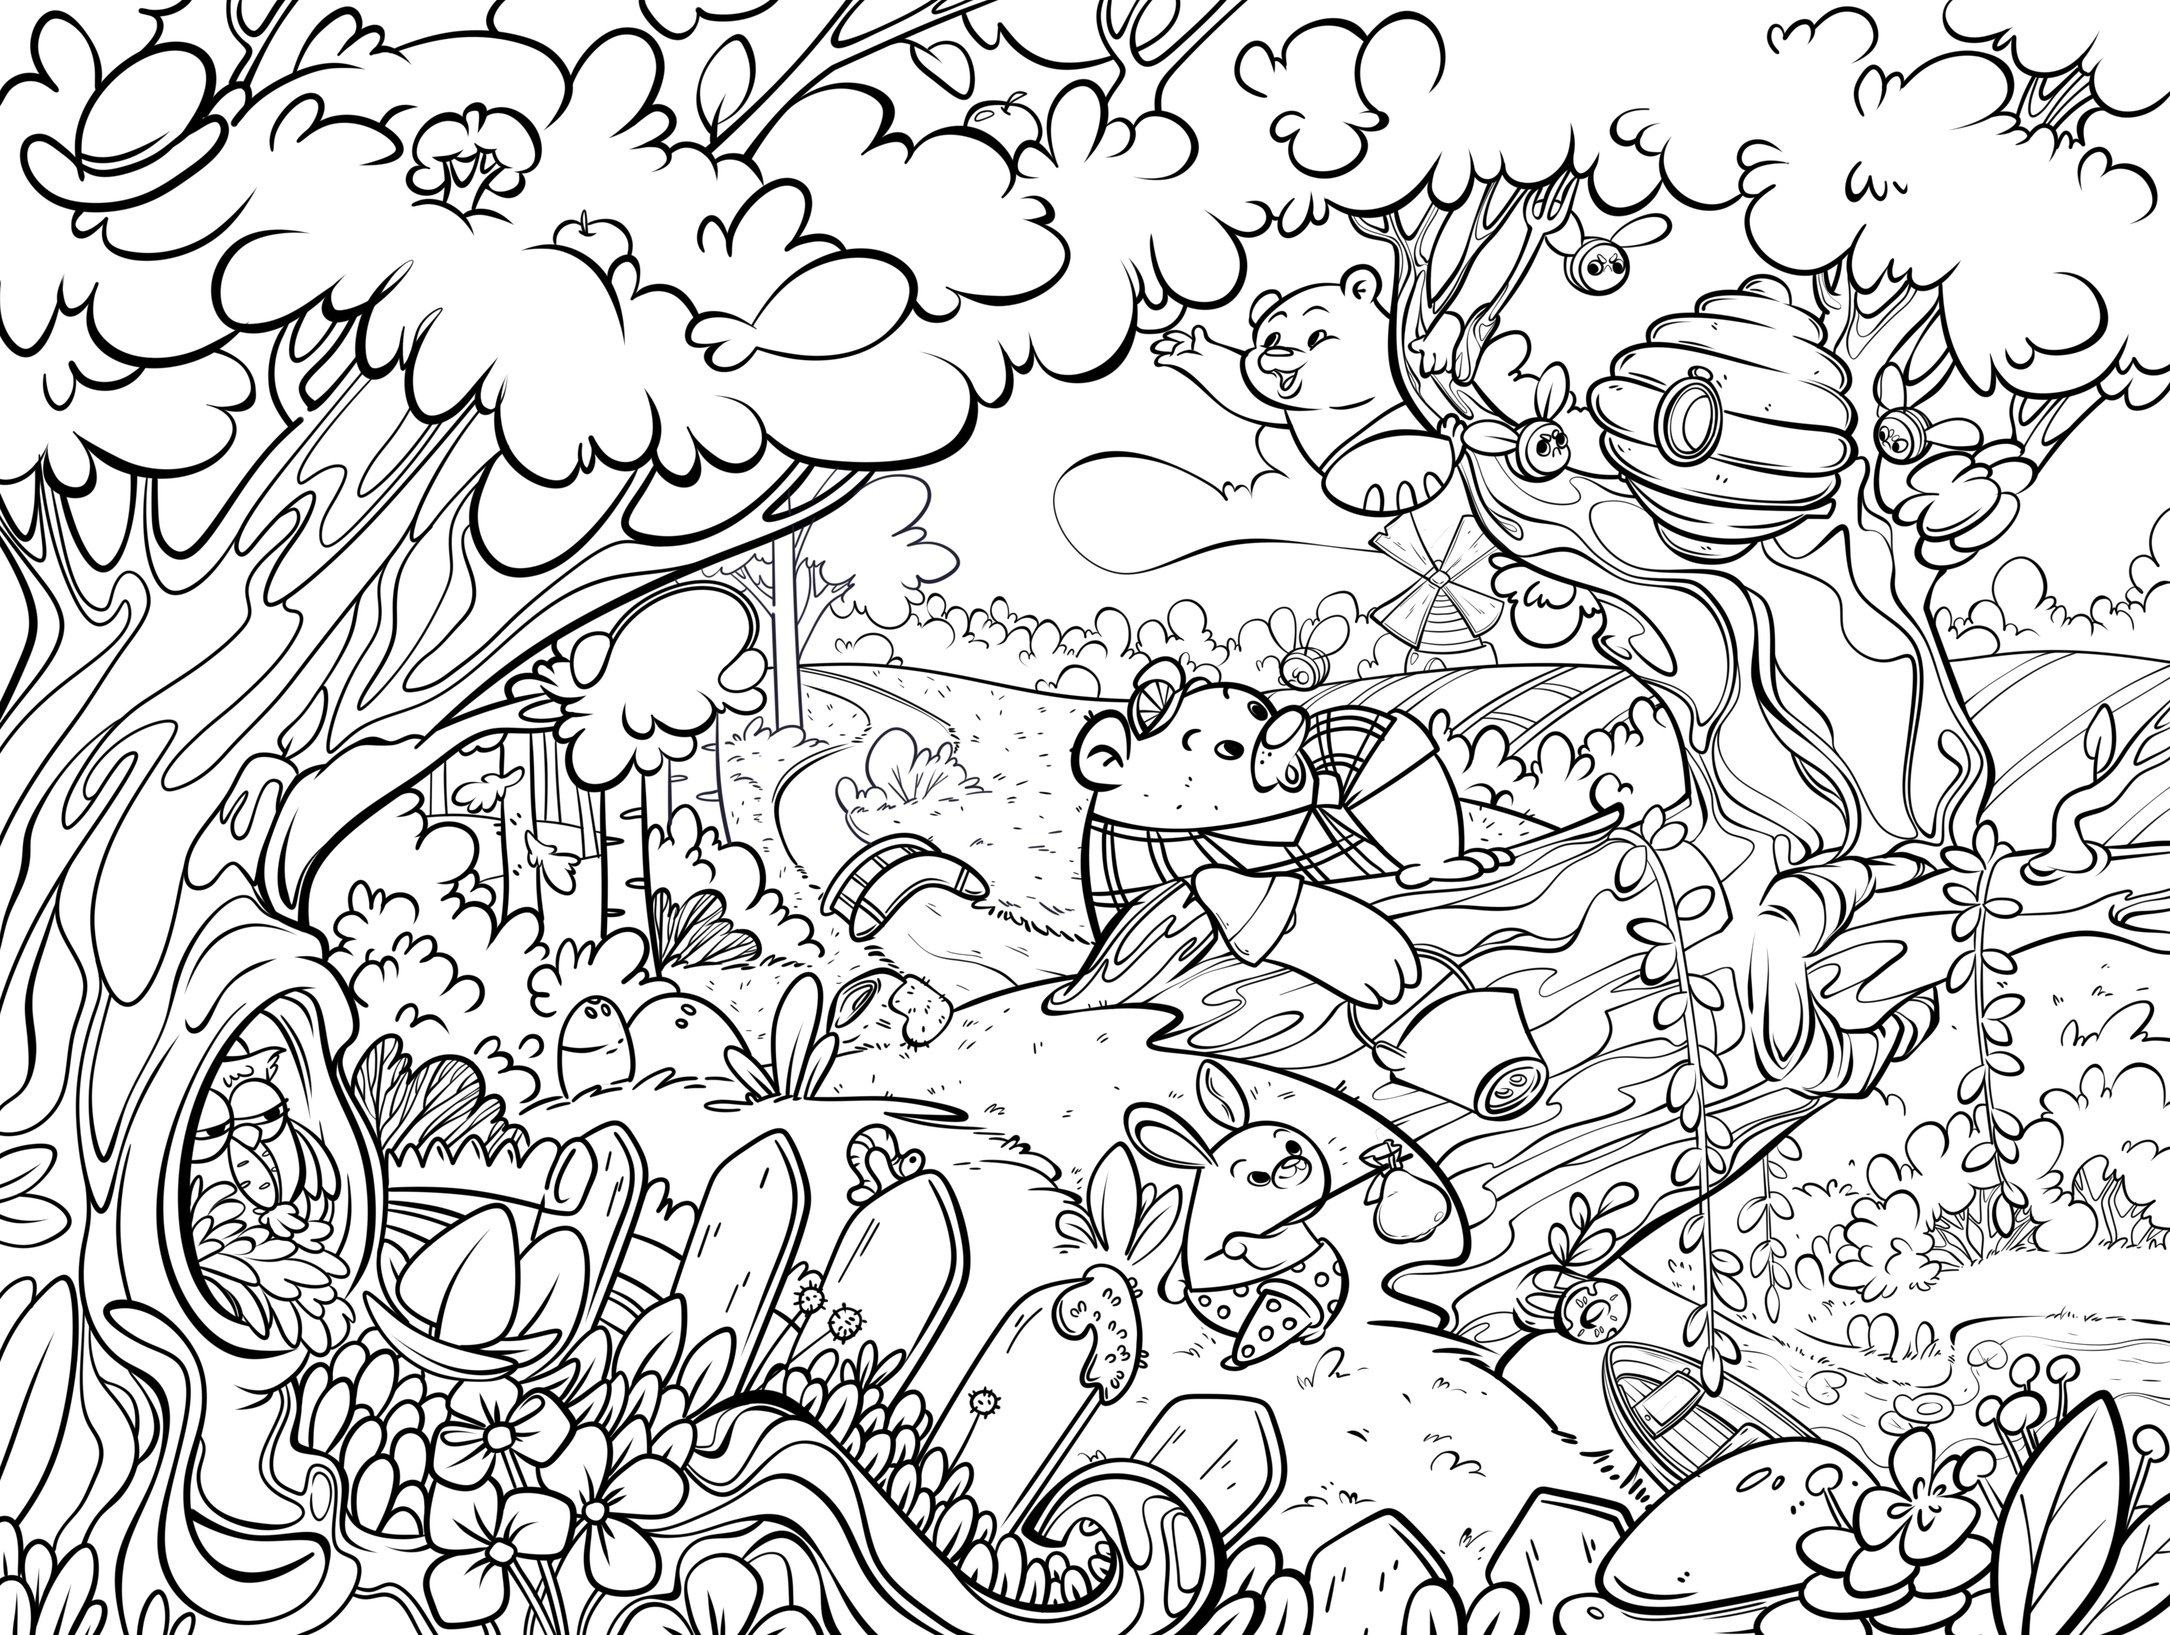 Волшебный лес.Раскраска. 145х210 мм, 16 стр. 1+1 Умка